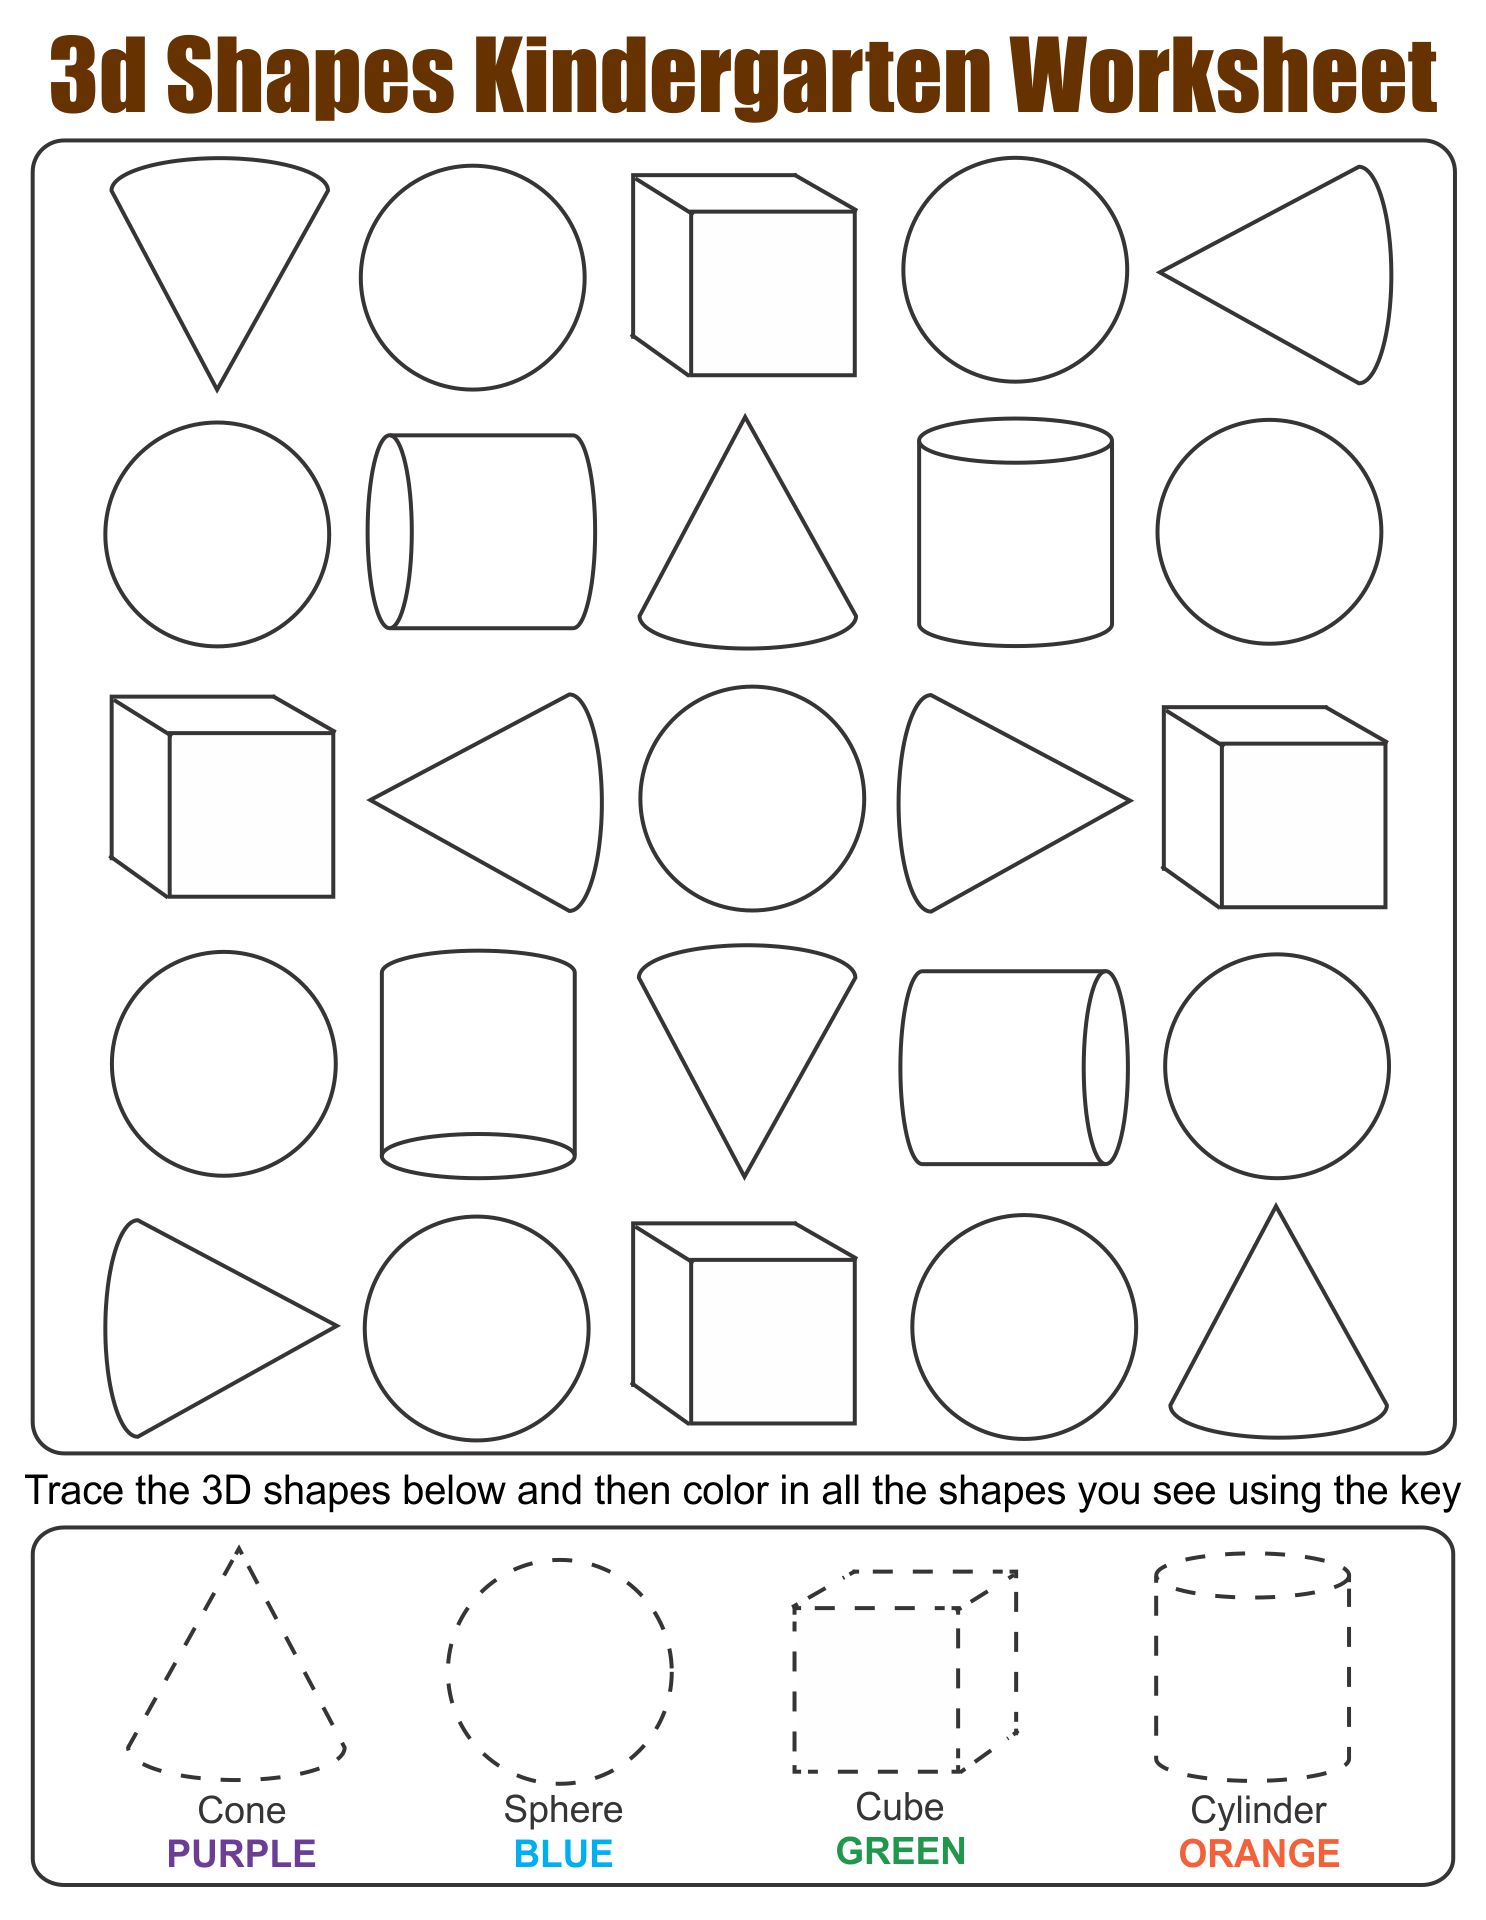 3d-shapes-worksheets-for-kindergarten-printable-kindergarten-worksheets